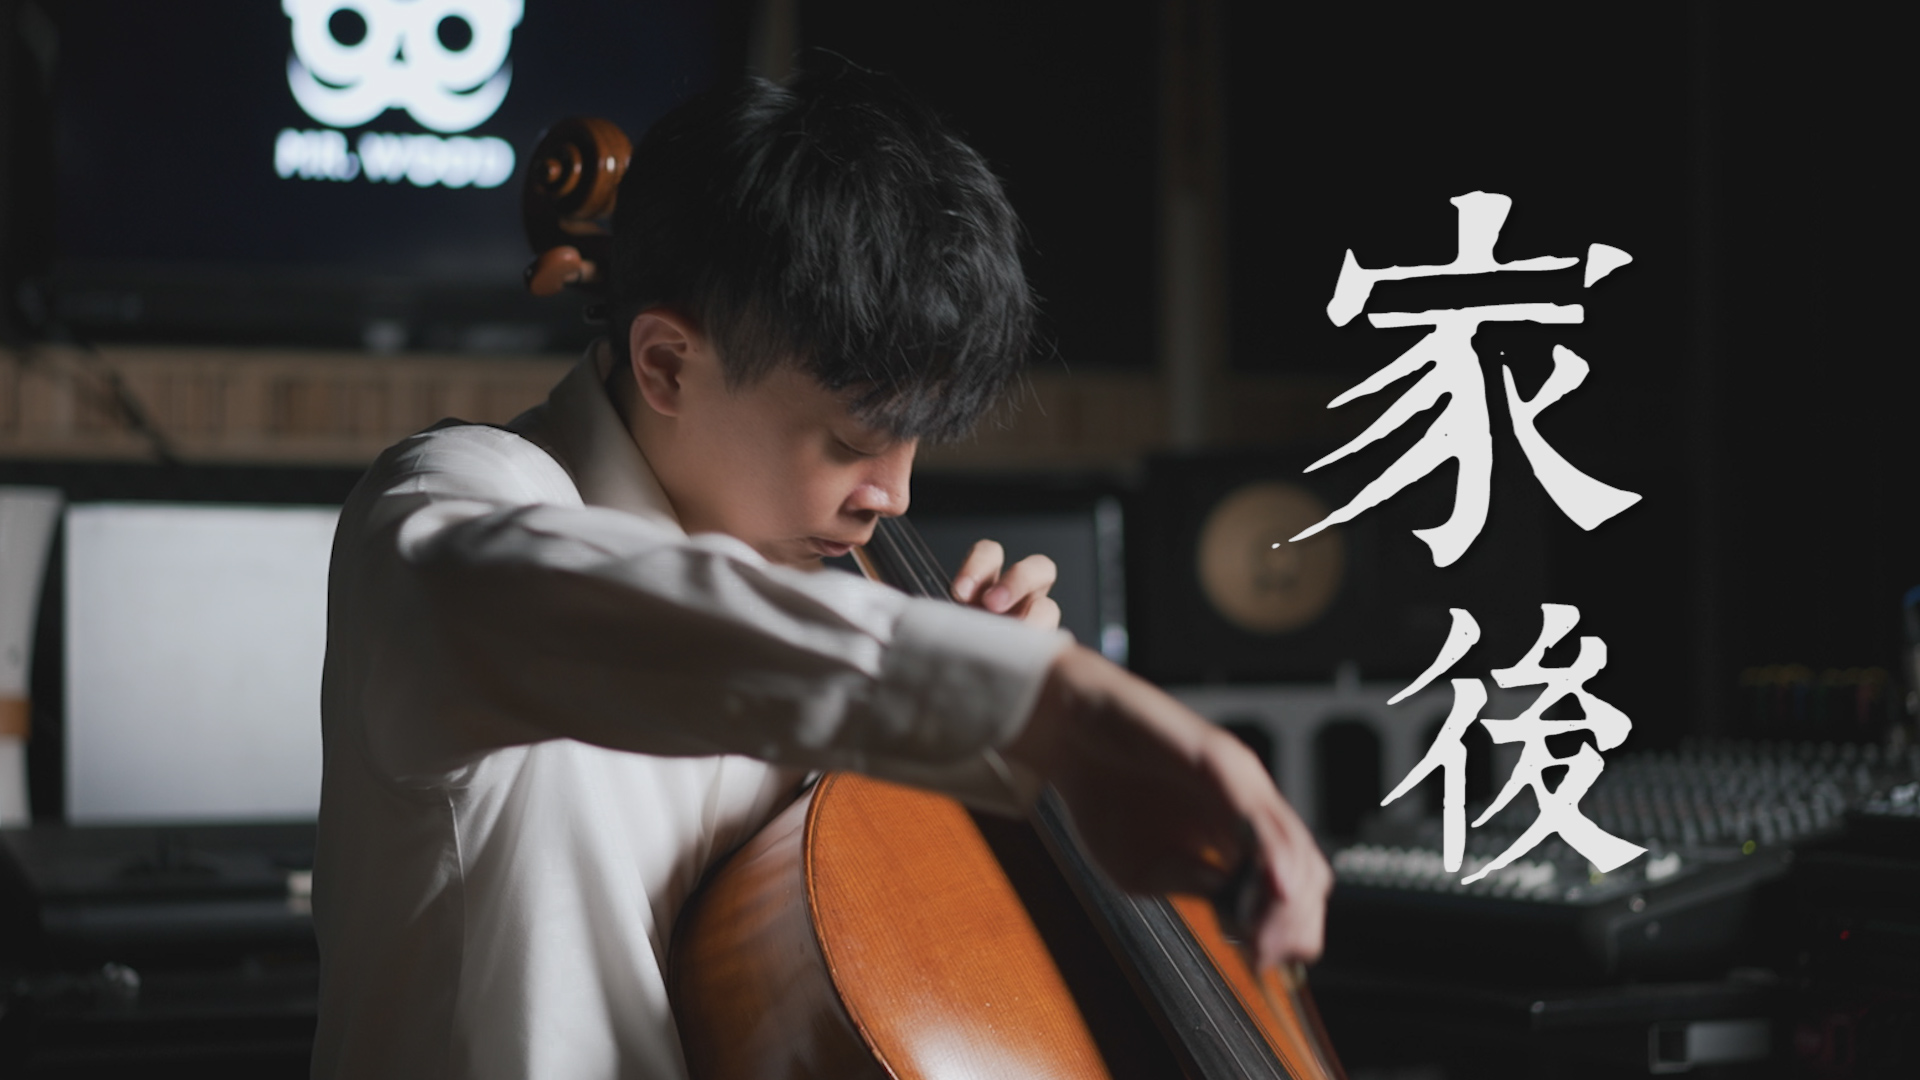 Wife《家後》江蕙cello cover 大提琴版本 『cover by YoYo Cello』